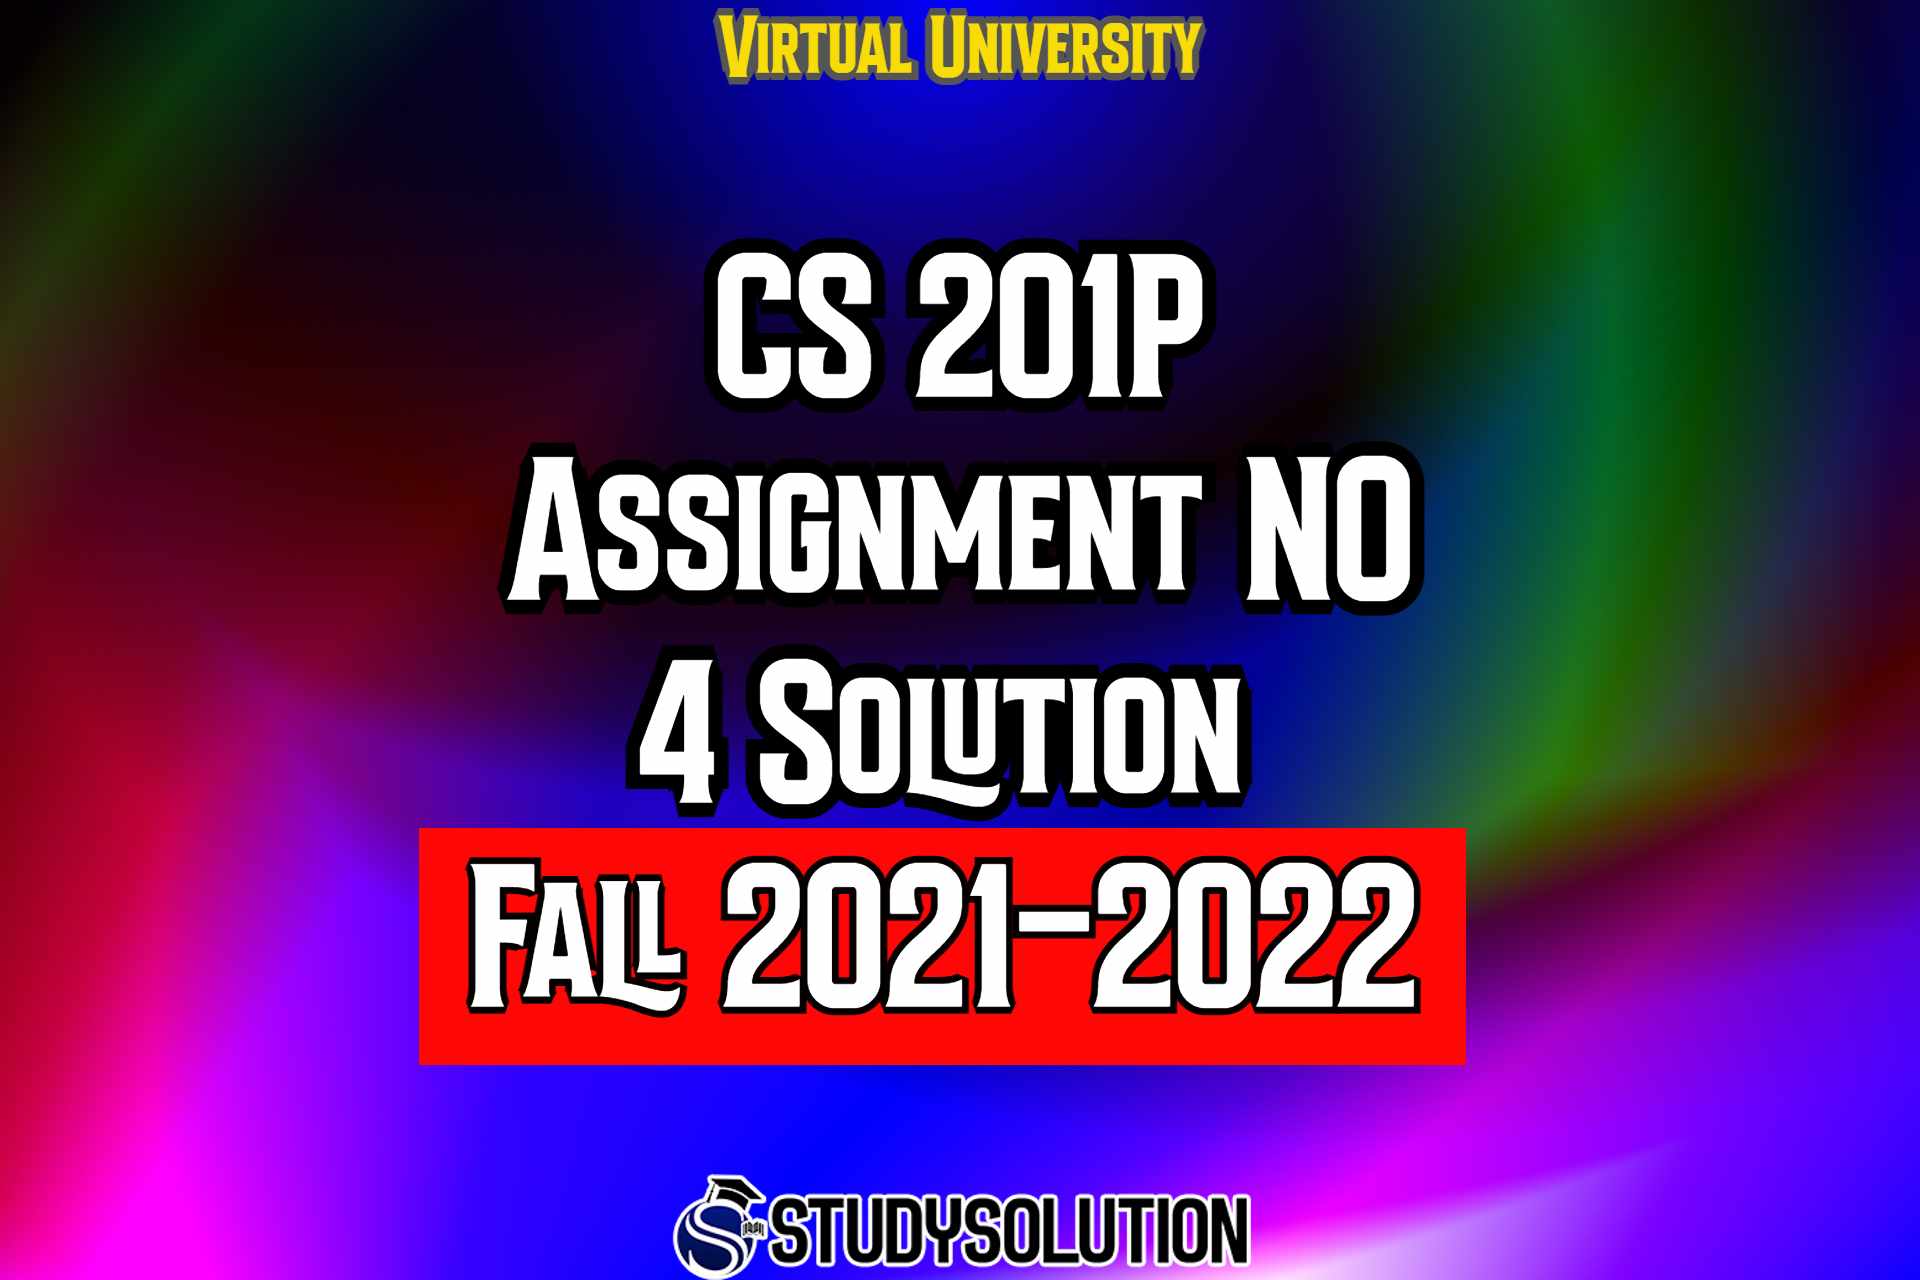 CS201P Assignment No 4 Solution Fall 2022